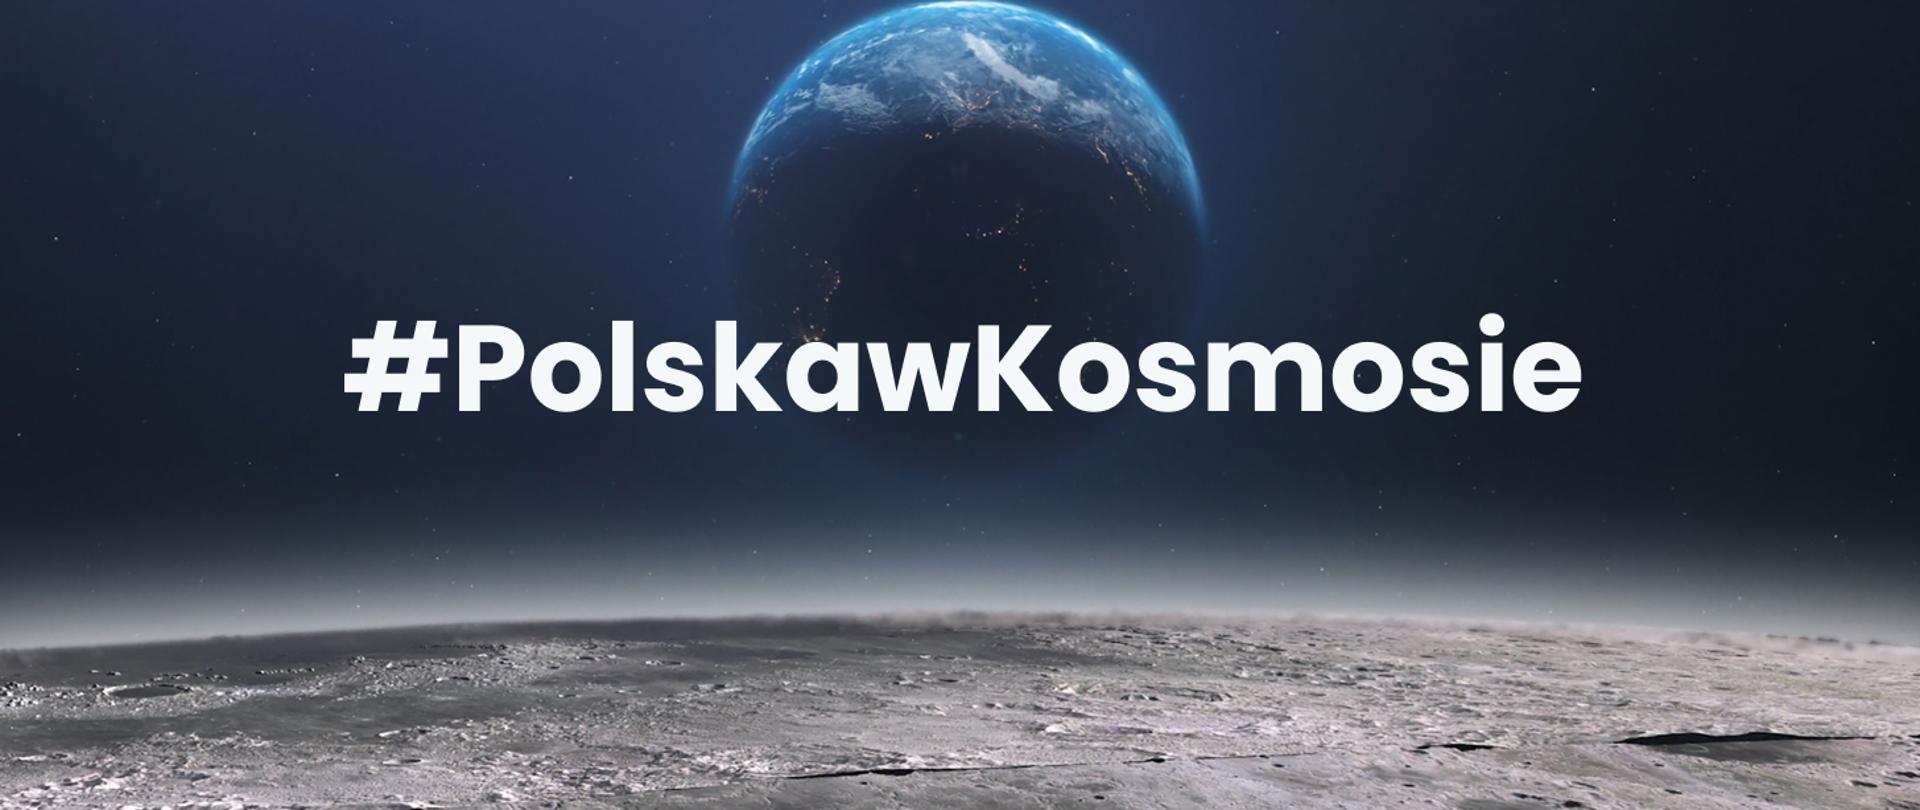 na środku napis #PolskawKosmosie, w tle widać kulę ziemską z dużej odległości, na dole widać podłoże innej planety